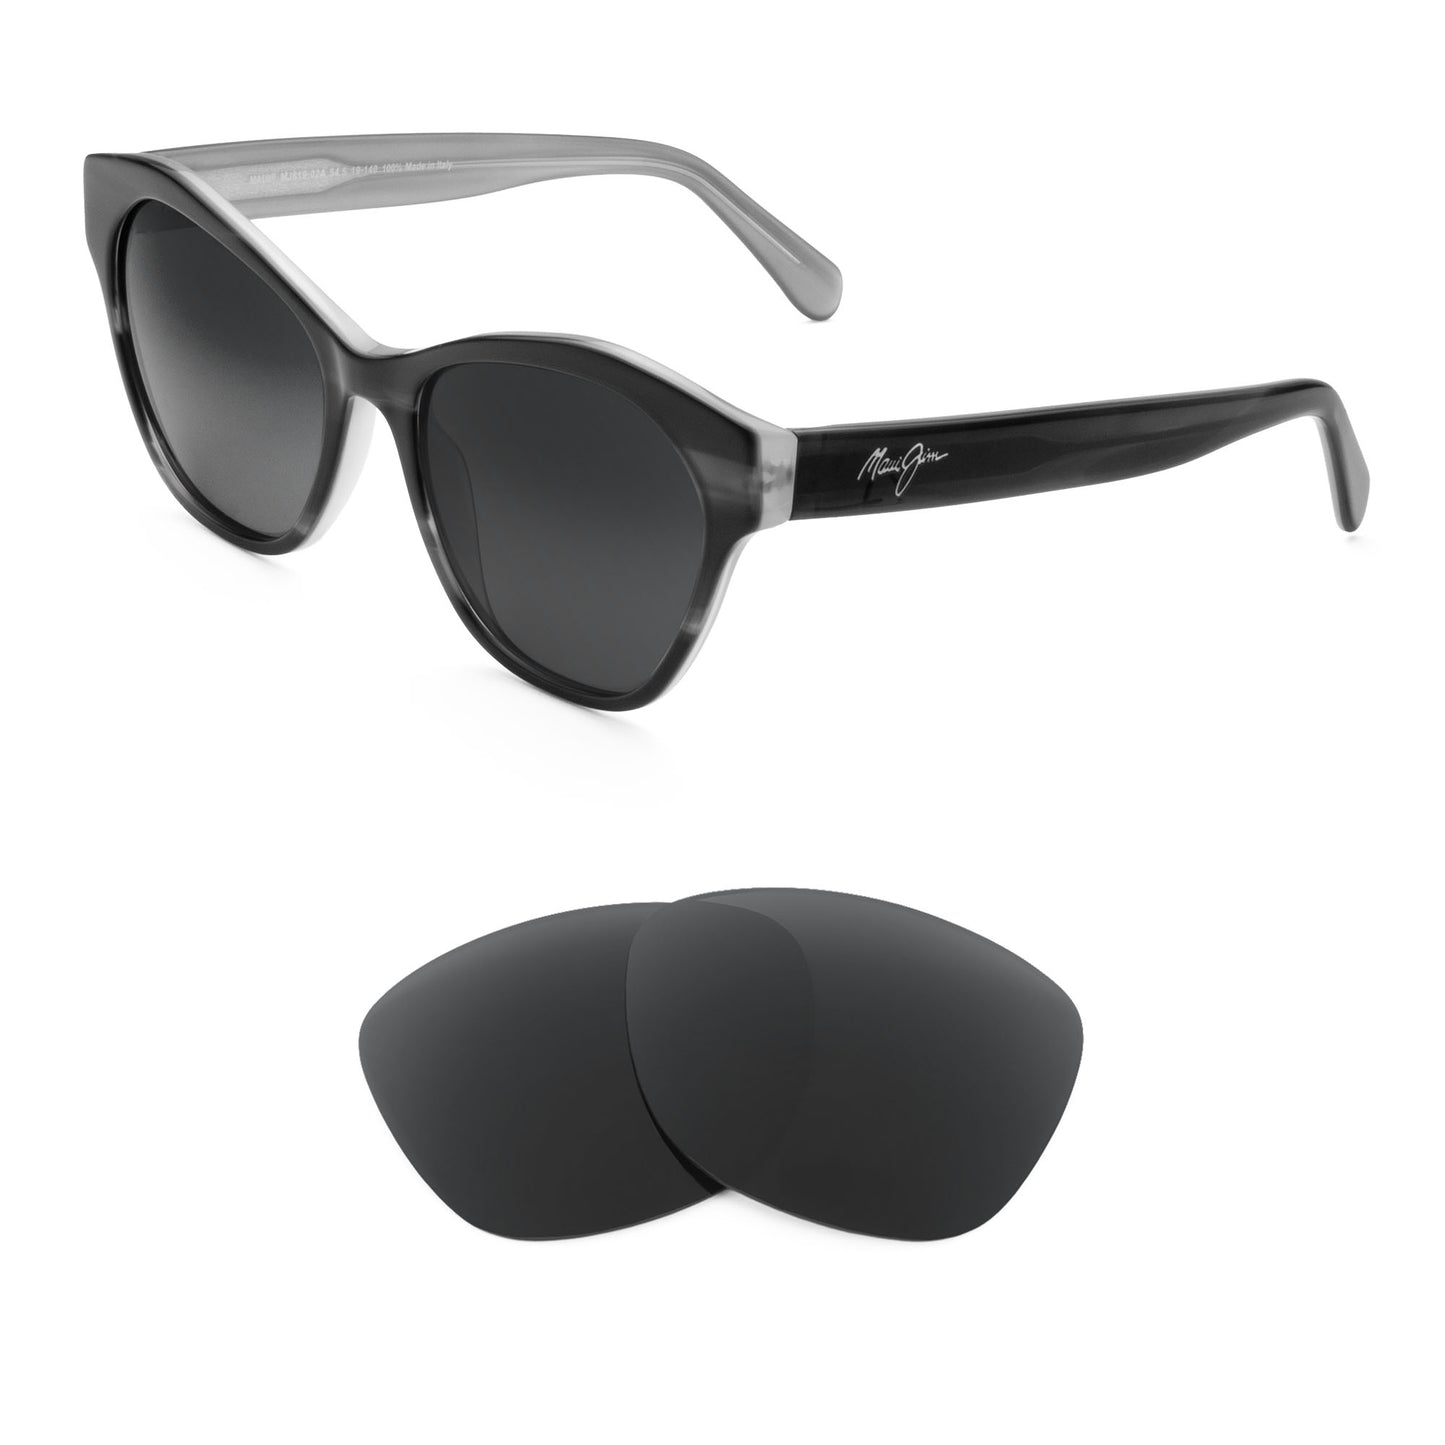 Maui Jim Kila MJ819 sunglasses with replacement lenses